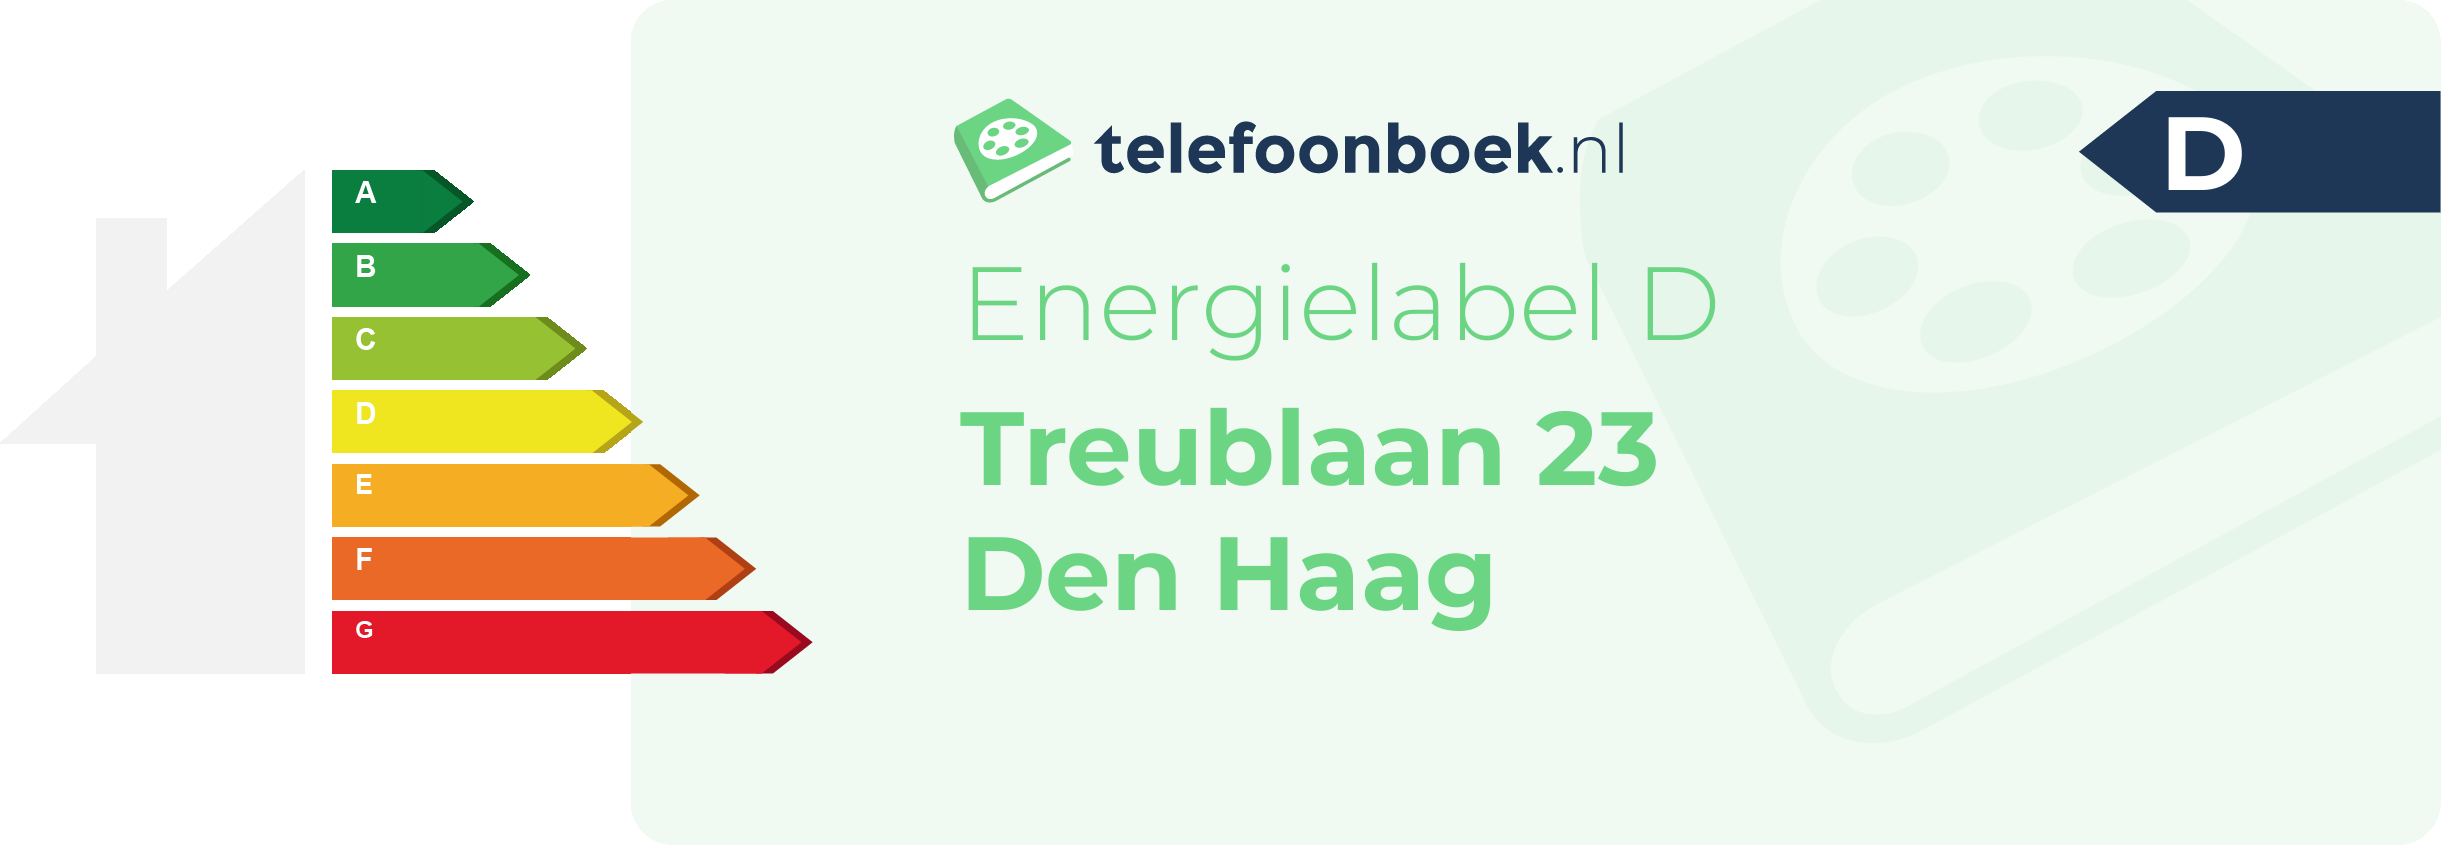 Energielabel Treublaan 23 Den Haag